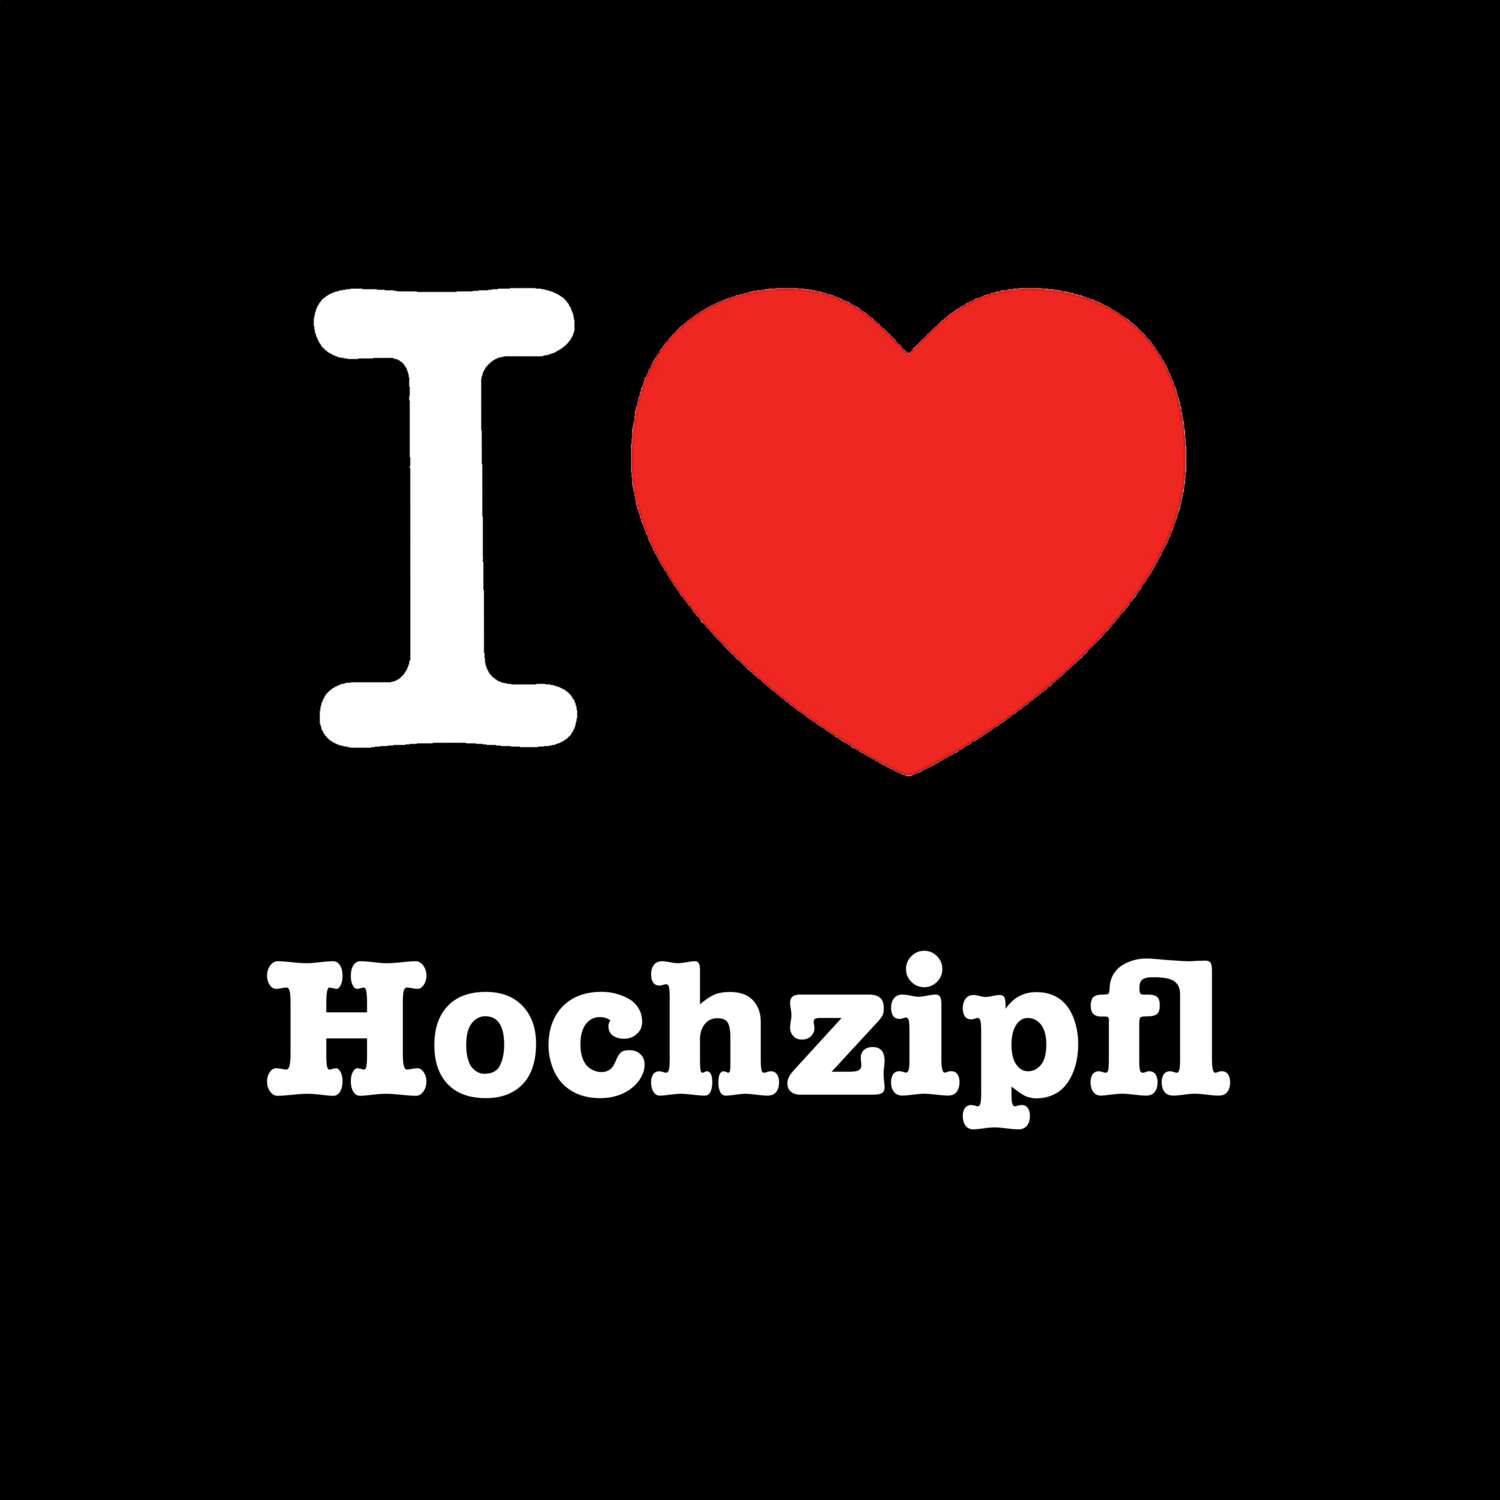 Hochzipfl T-Shirt »I love«